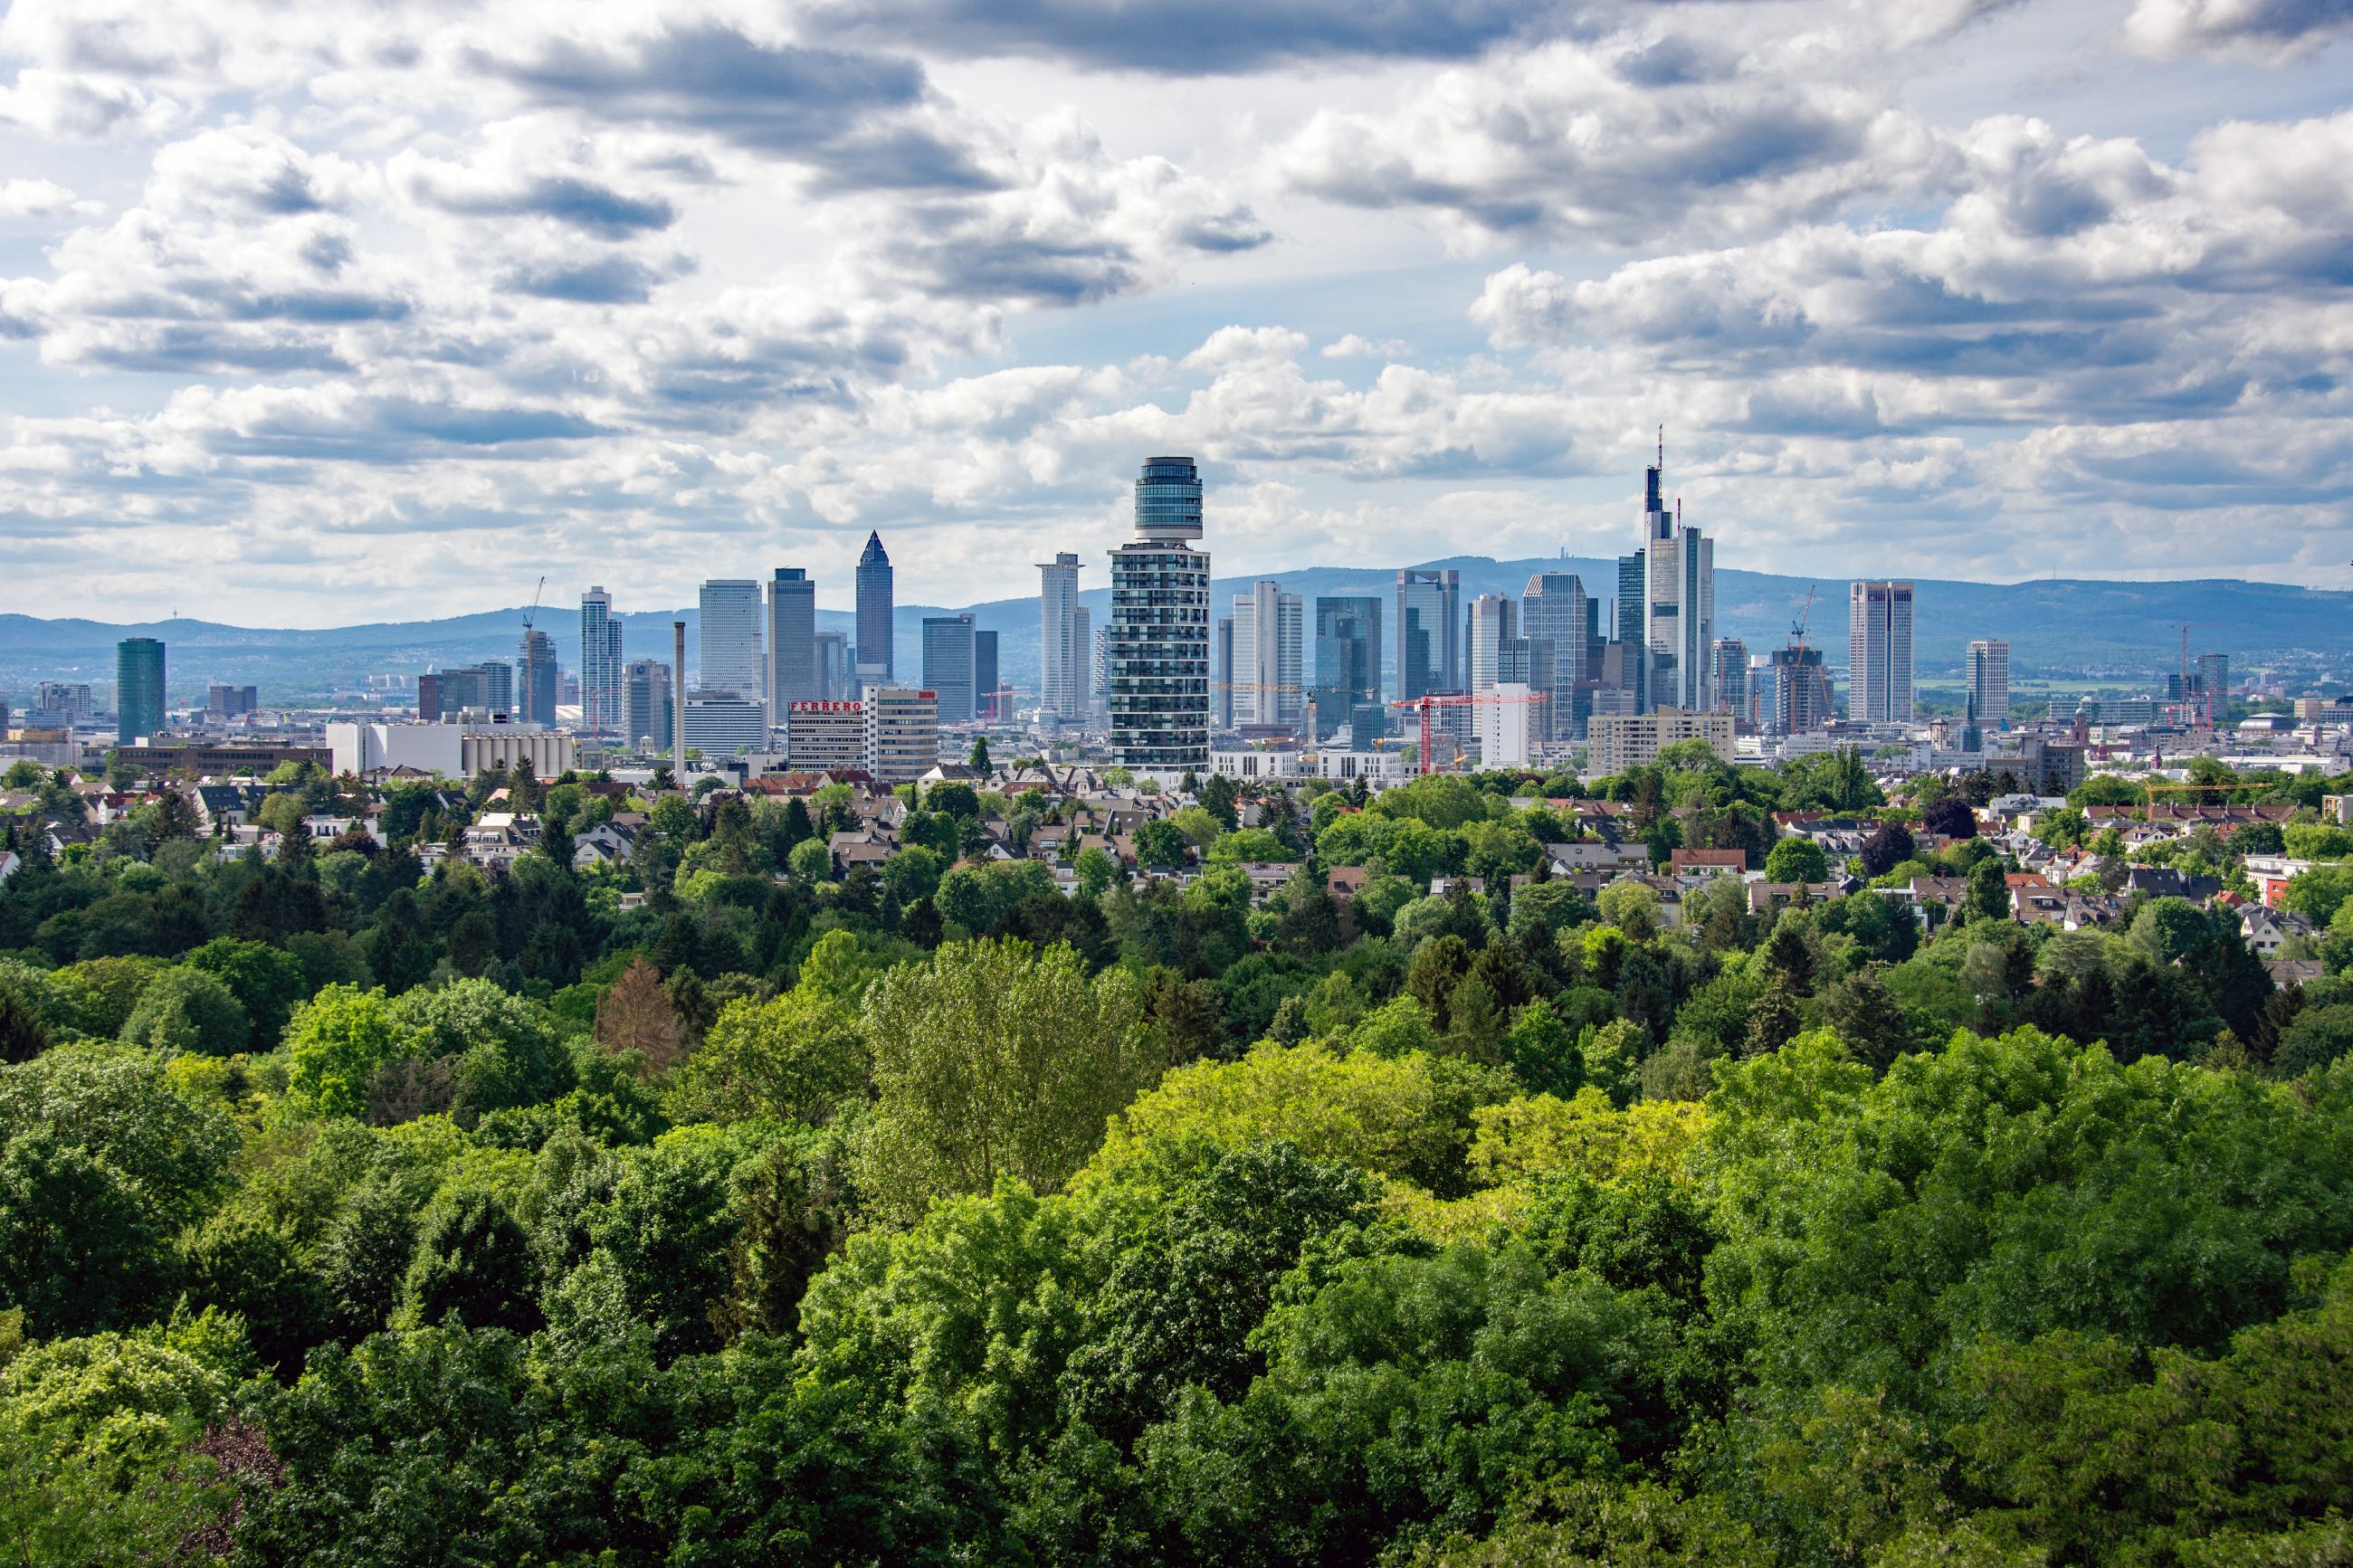 Skyline von Frankfurt am Main mit vielen gesunden Bäumen im Vordergrund